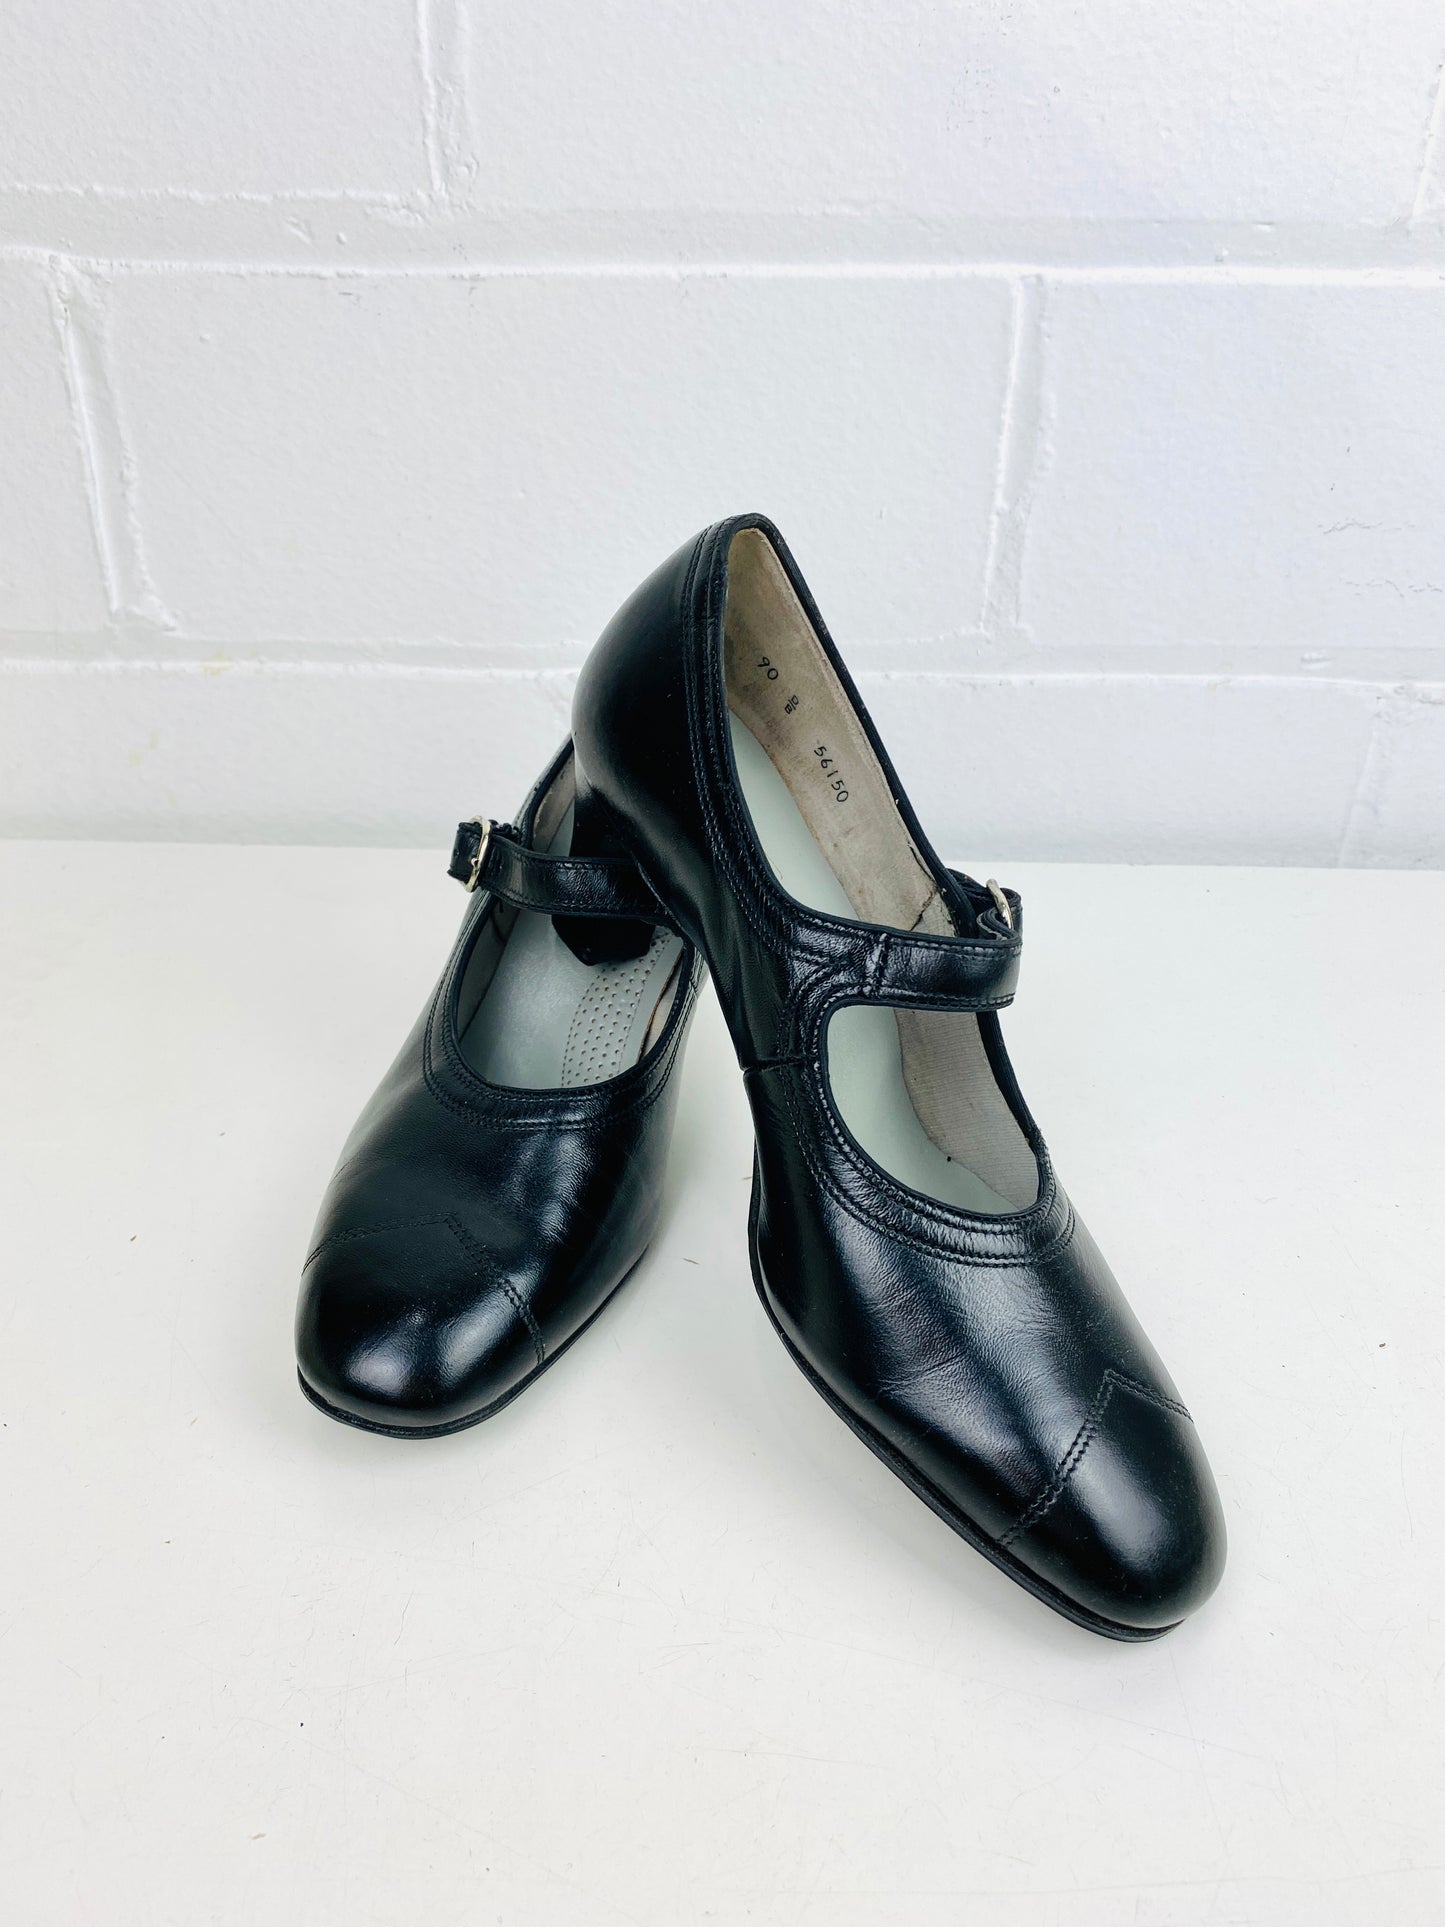 Vintage Deadstock Shoes, Women's 1980s Black Leather Pumps, NOS, 7088